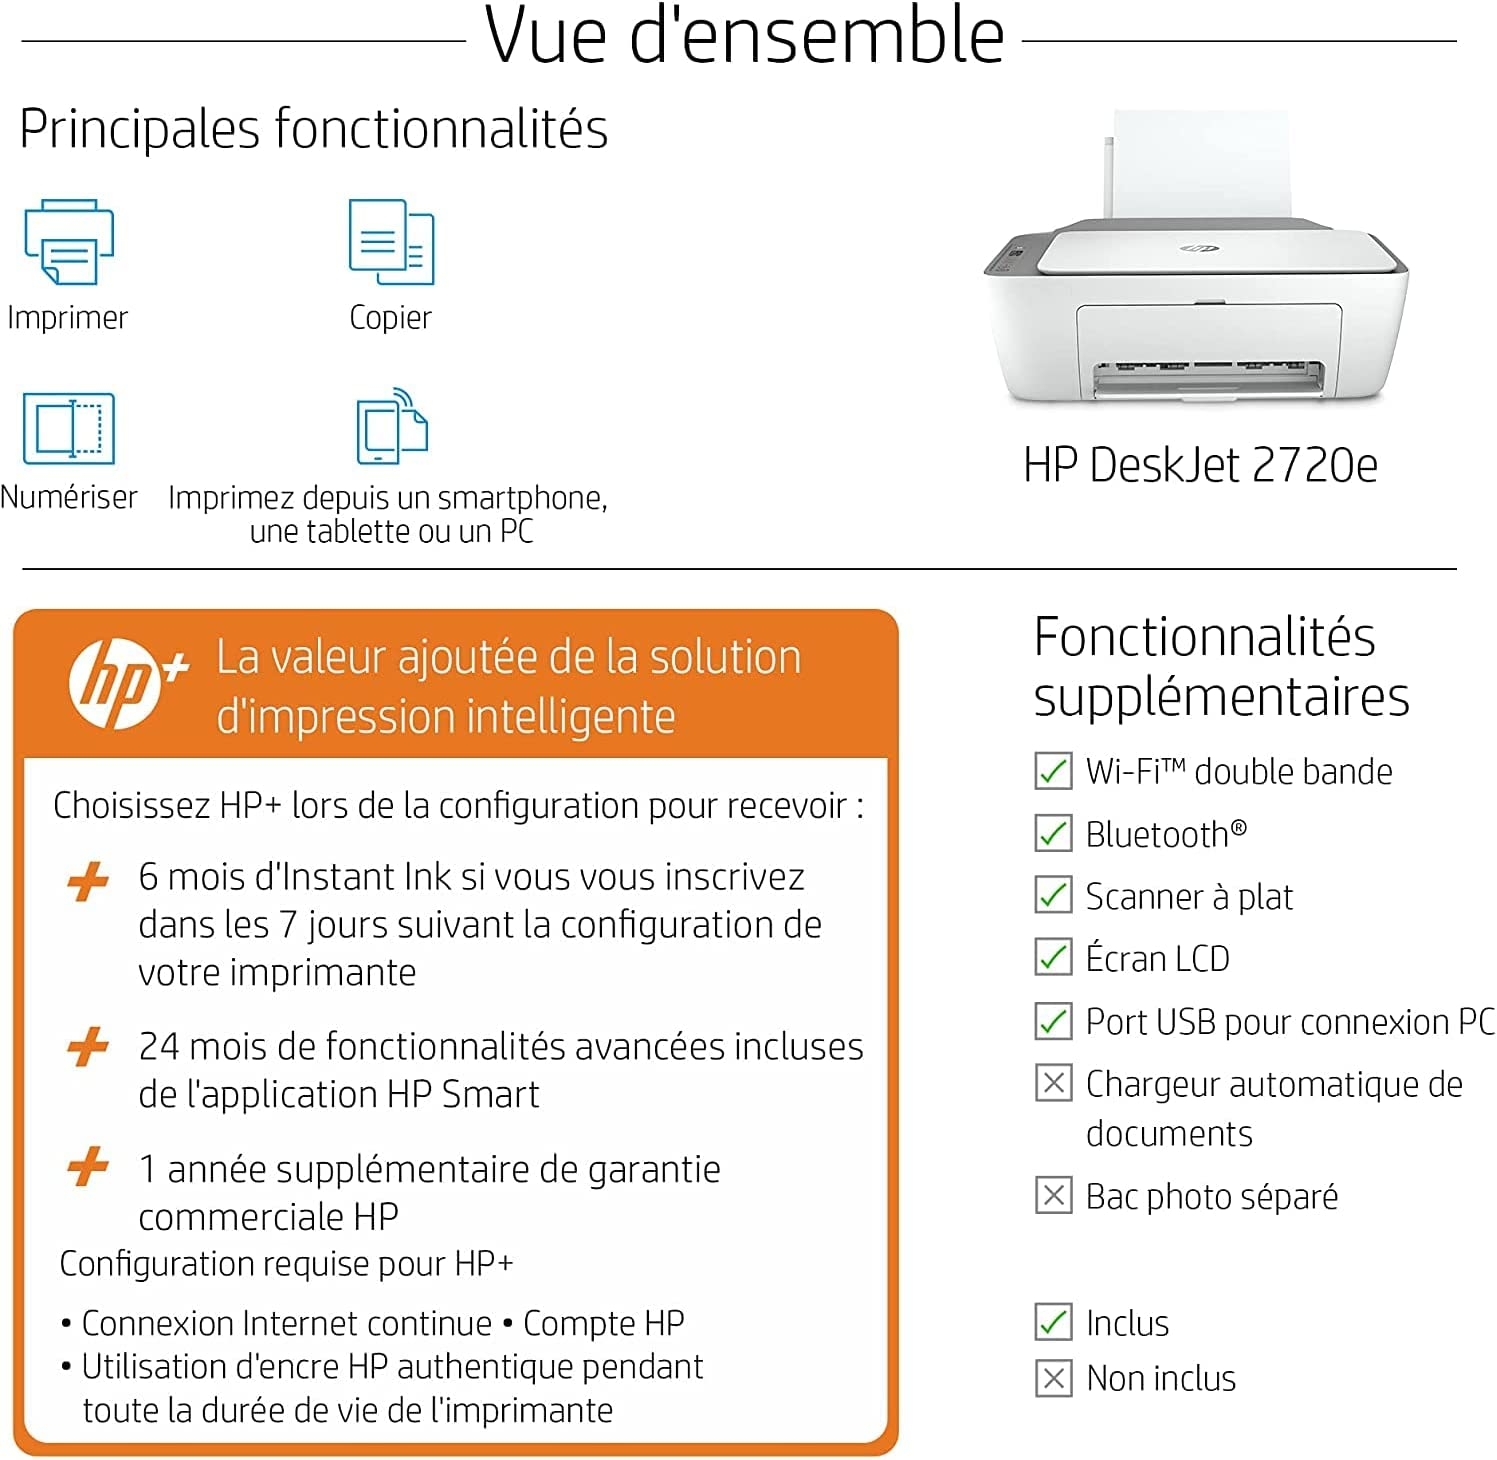 HP N°305 Setup H ou Instant Ink (noire ou couleurs) – France